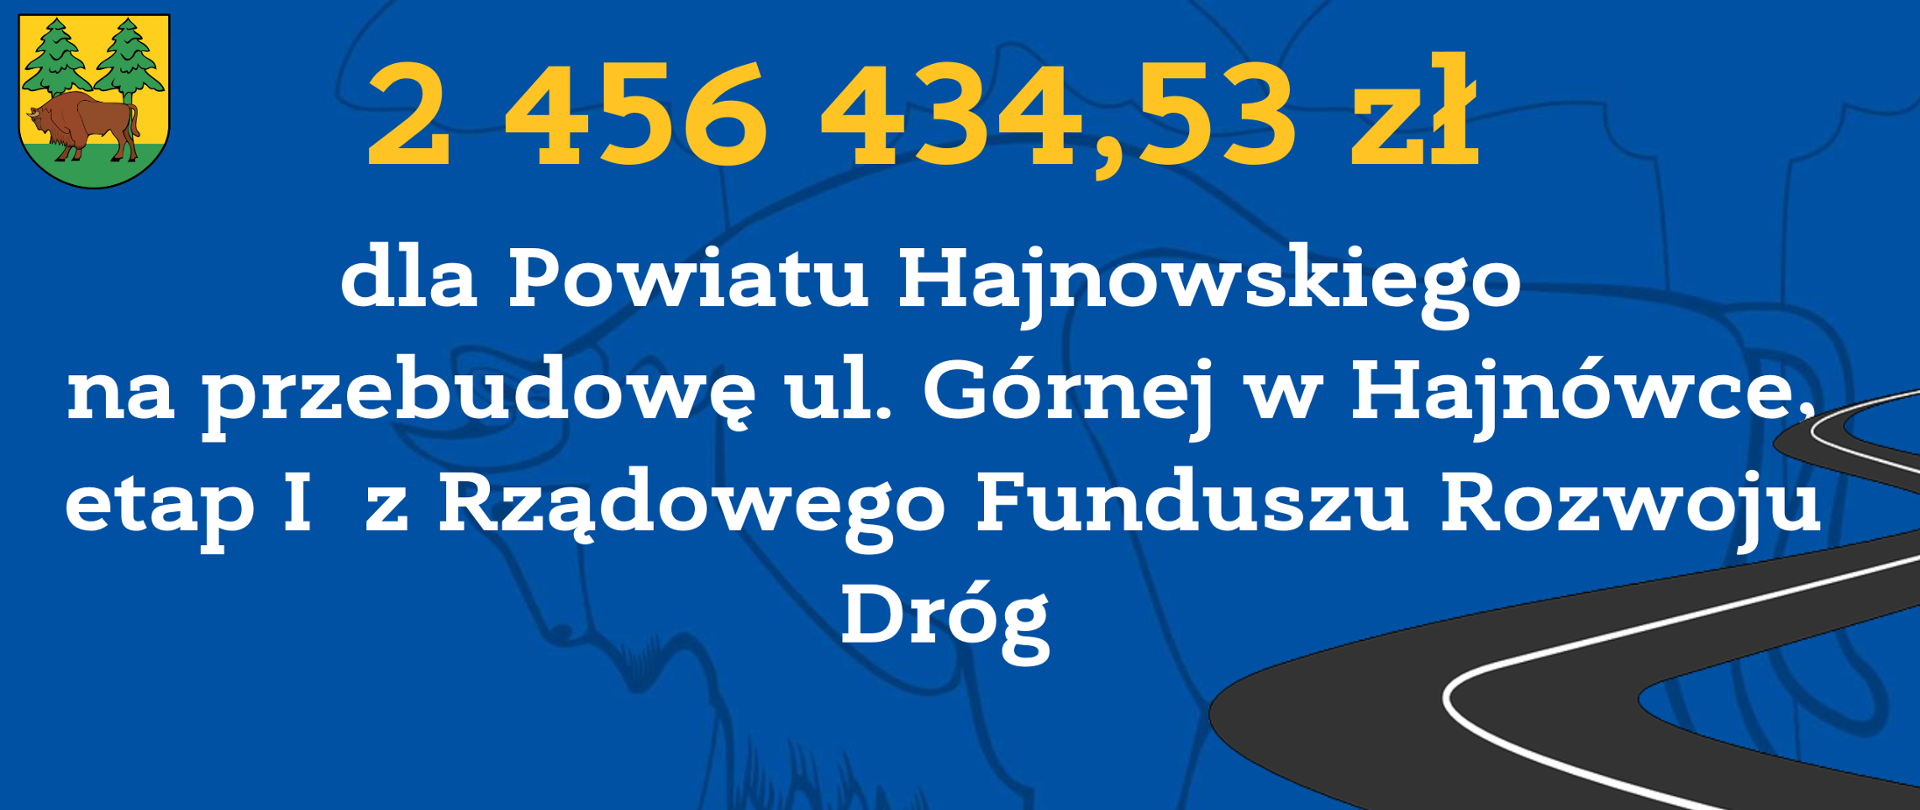 2 456 434,53 zł
dla Powiatu Hajnowskiego
na przebudowę ul. Górnej w Hajnówce, etap I z Rządowego Funduszu Rozwoju Dróg